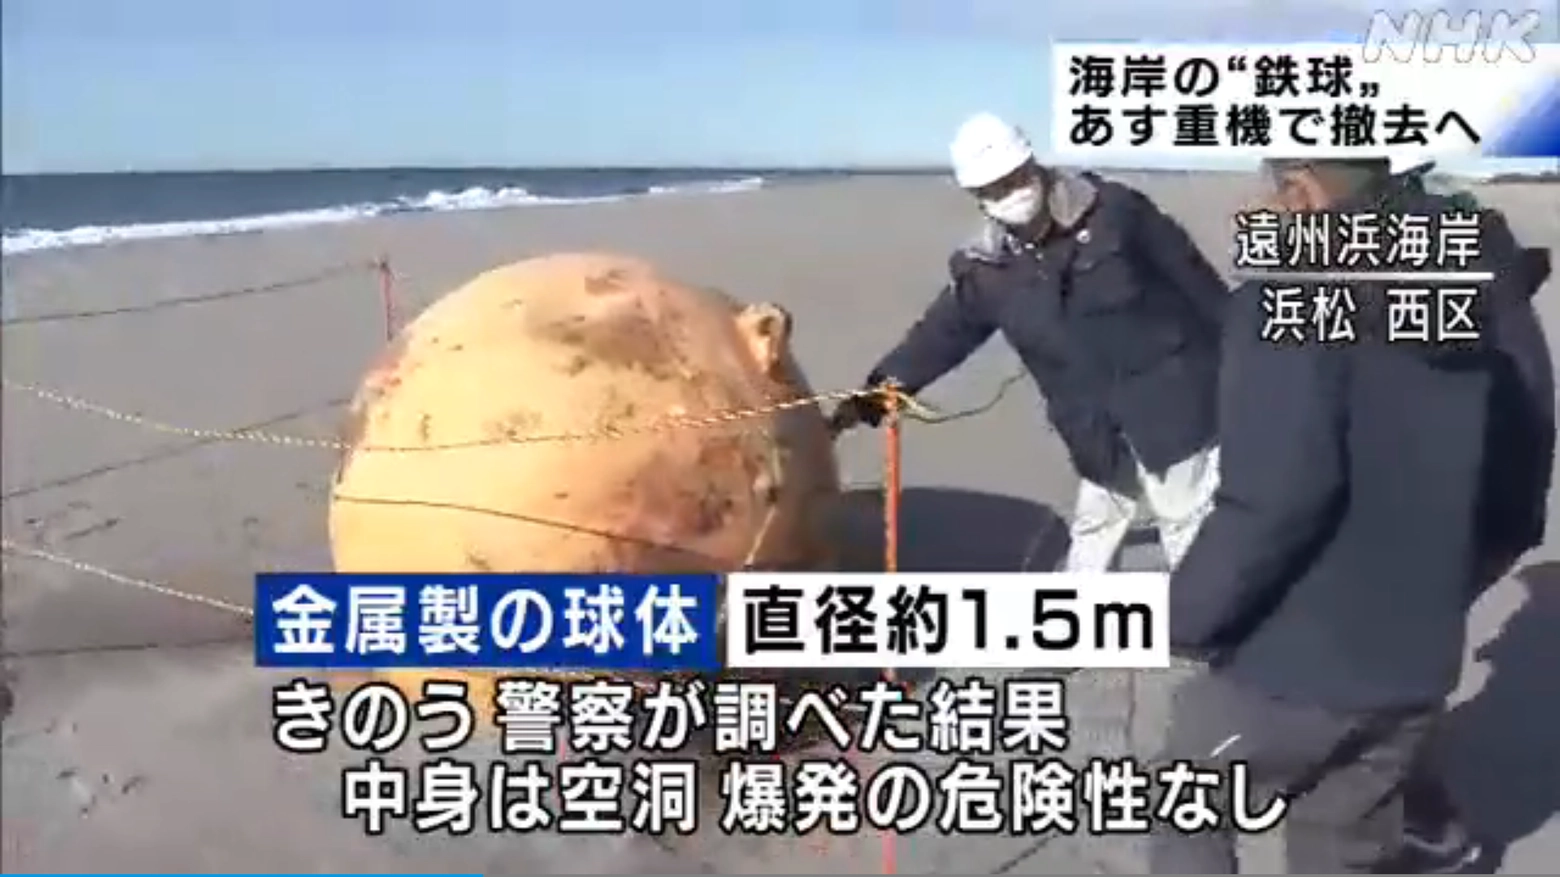 Fermo immagine tratto dal servizio dell'emittente giapponese NHK